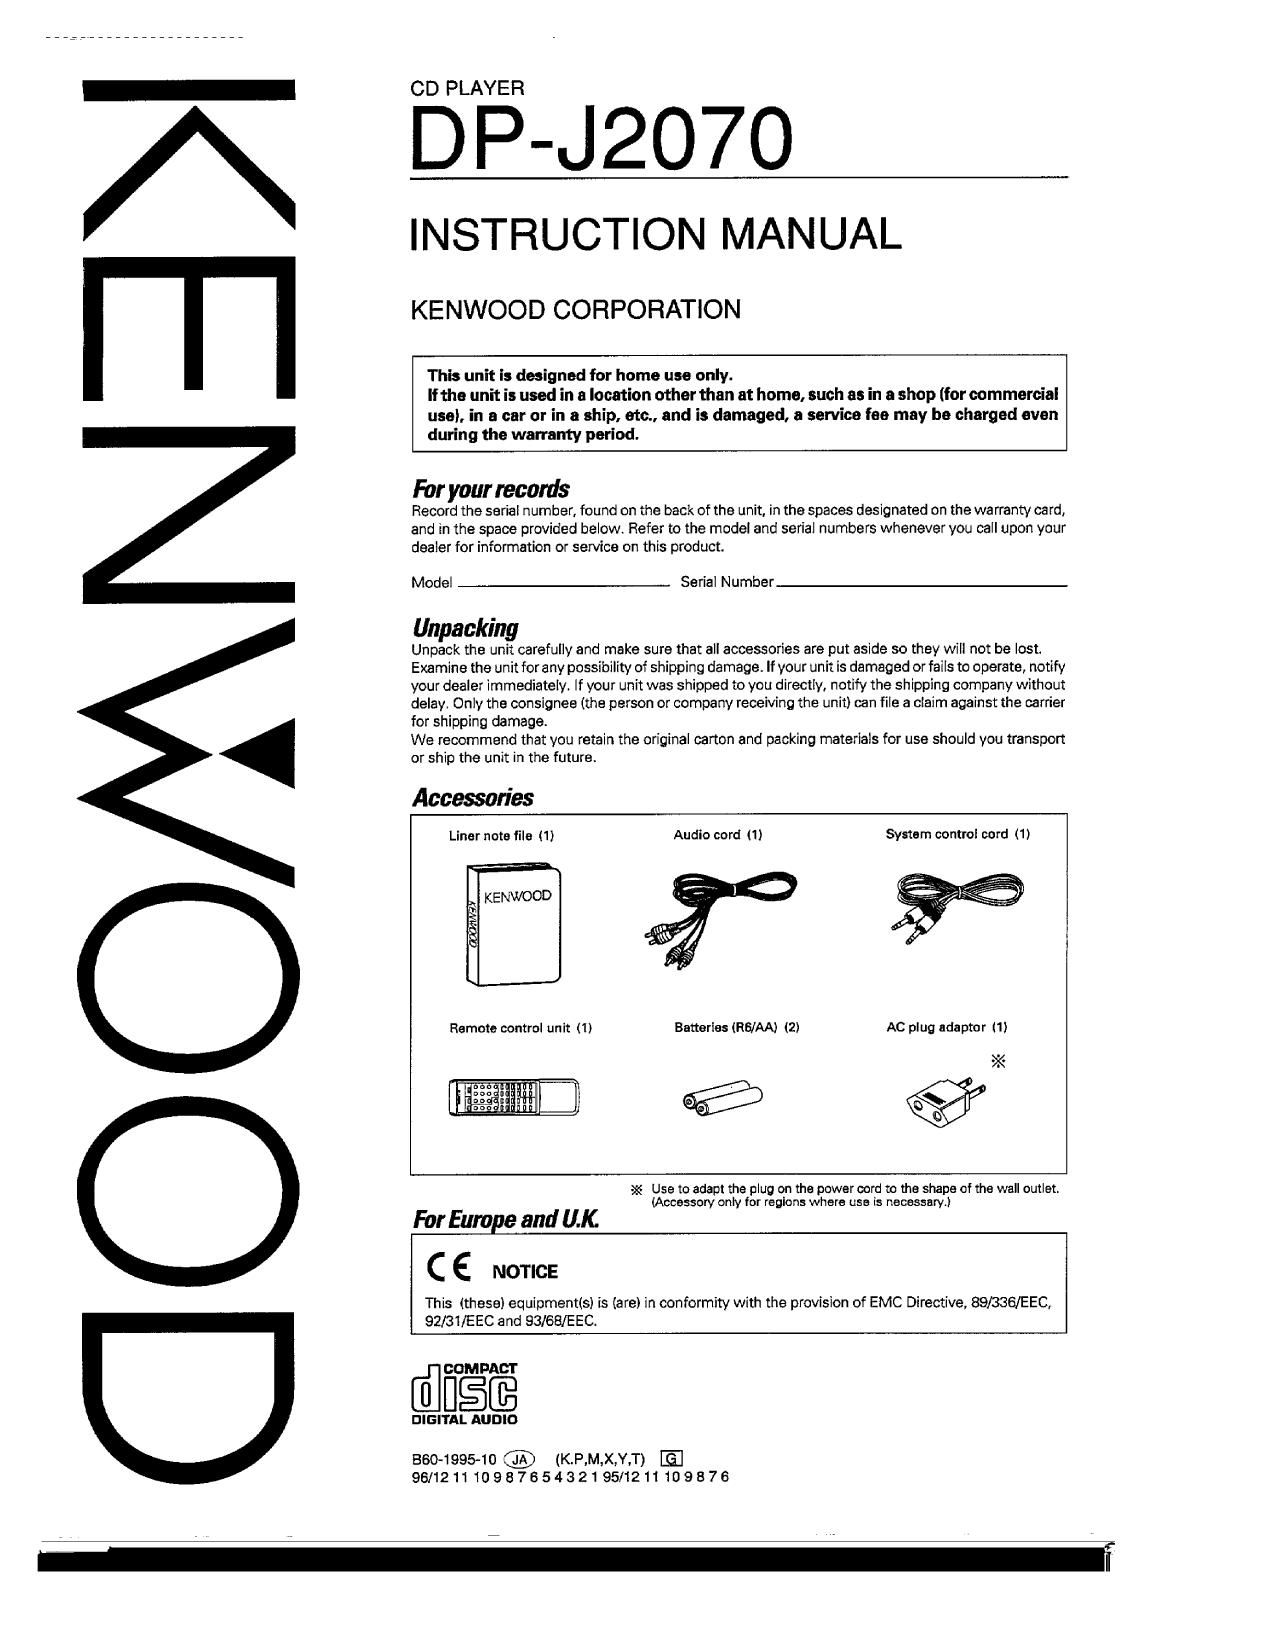 Kenwood DPJ 2070 Owners Manual